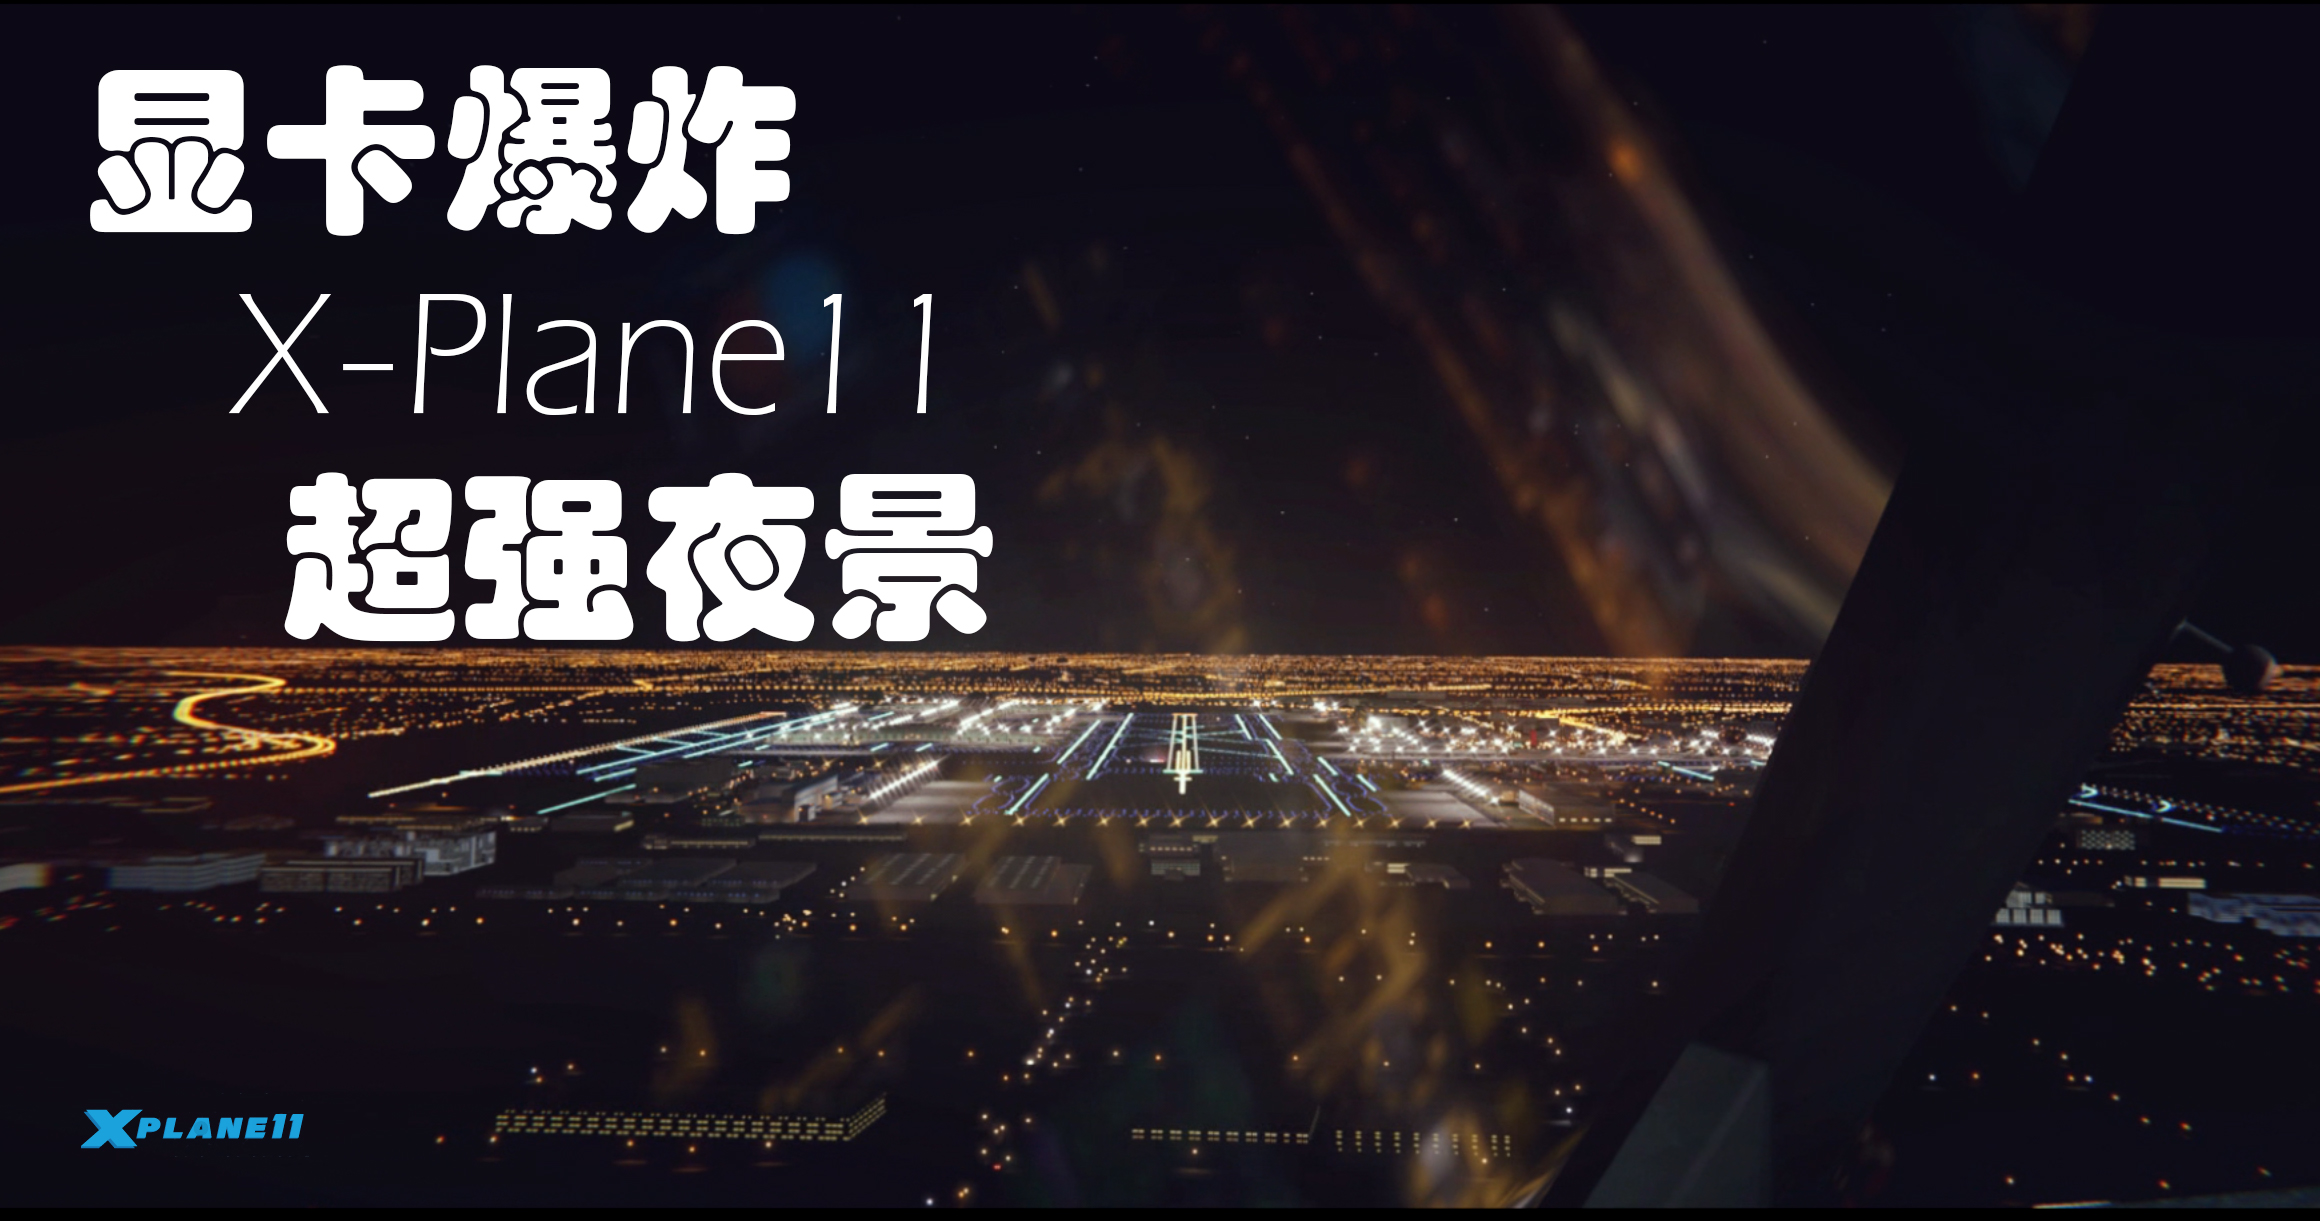 【显卡炸裂】神仙画质，超强夜景——X-plane11 A332夜降北京-3373 